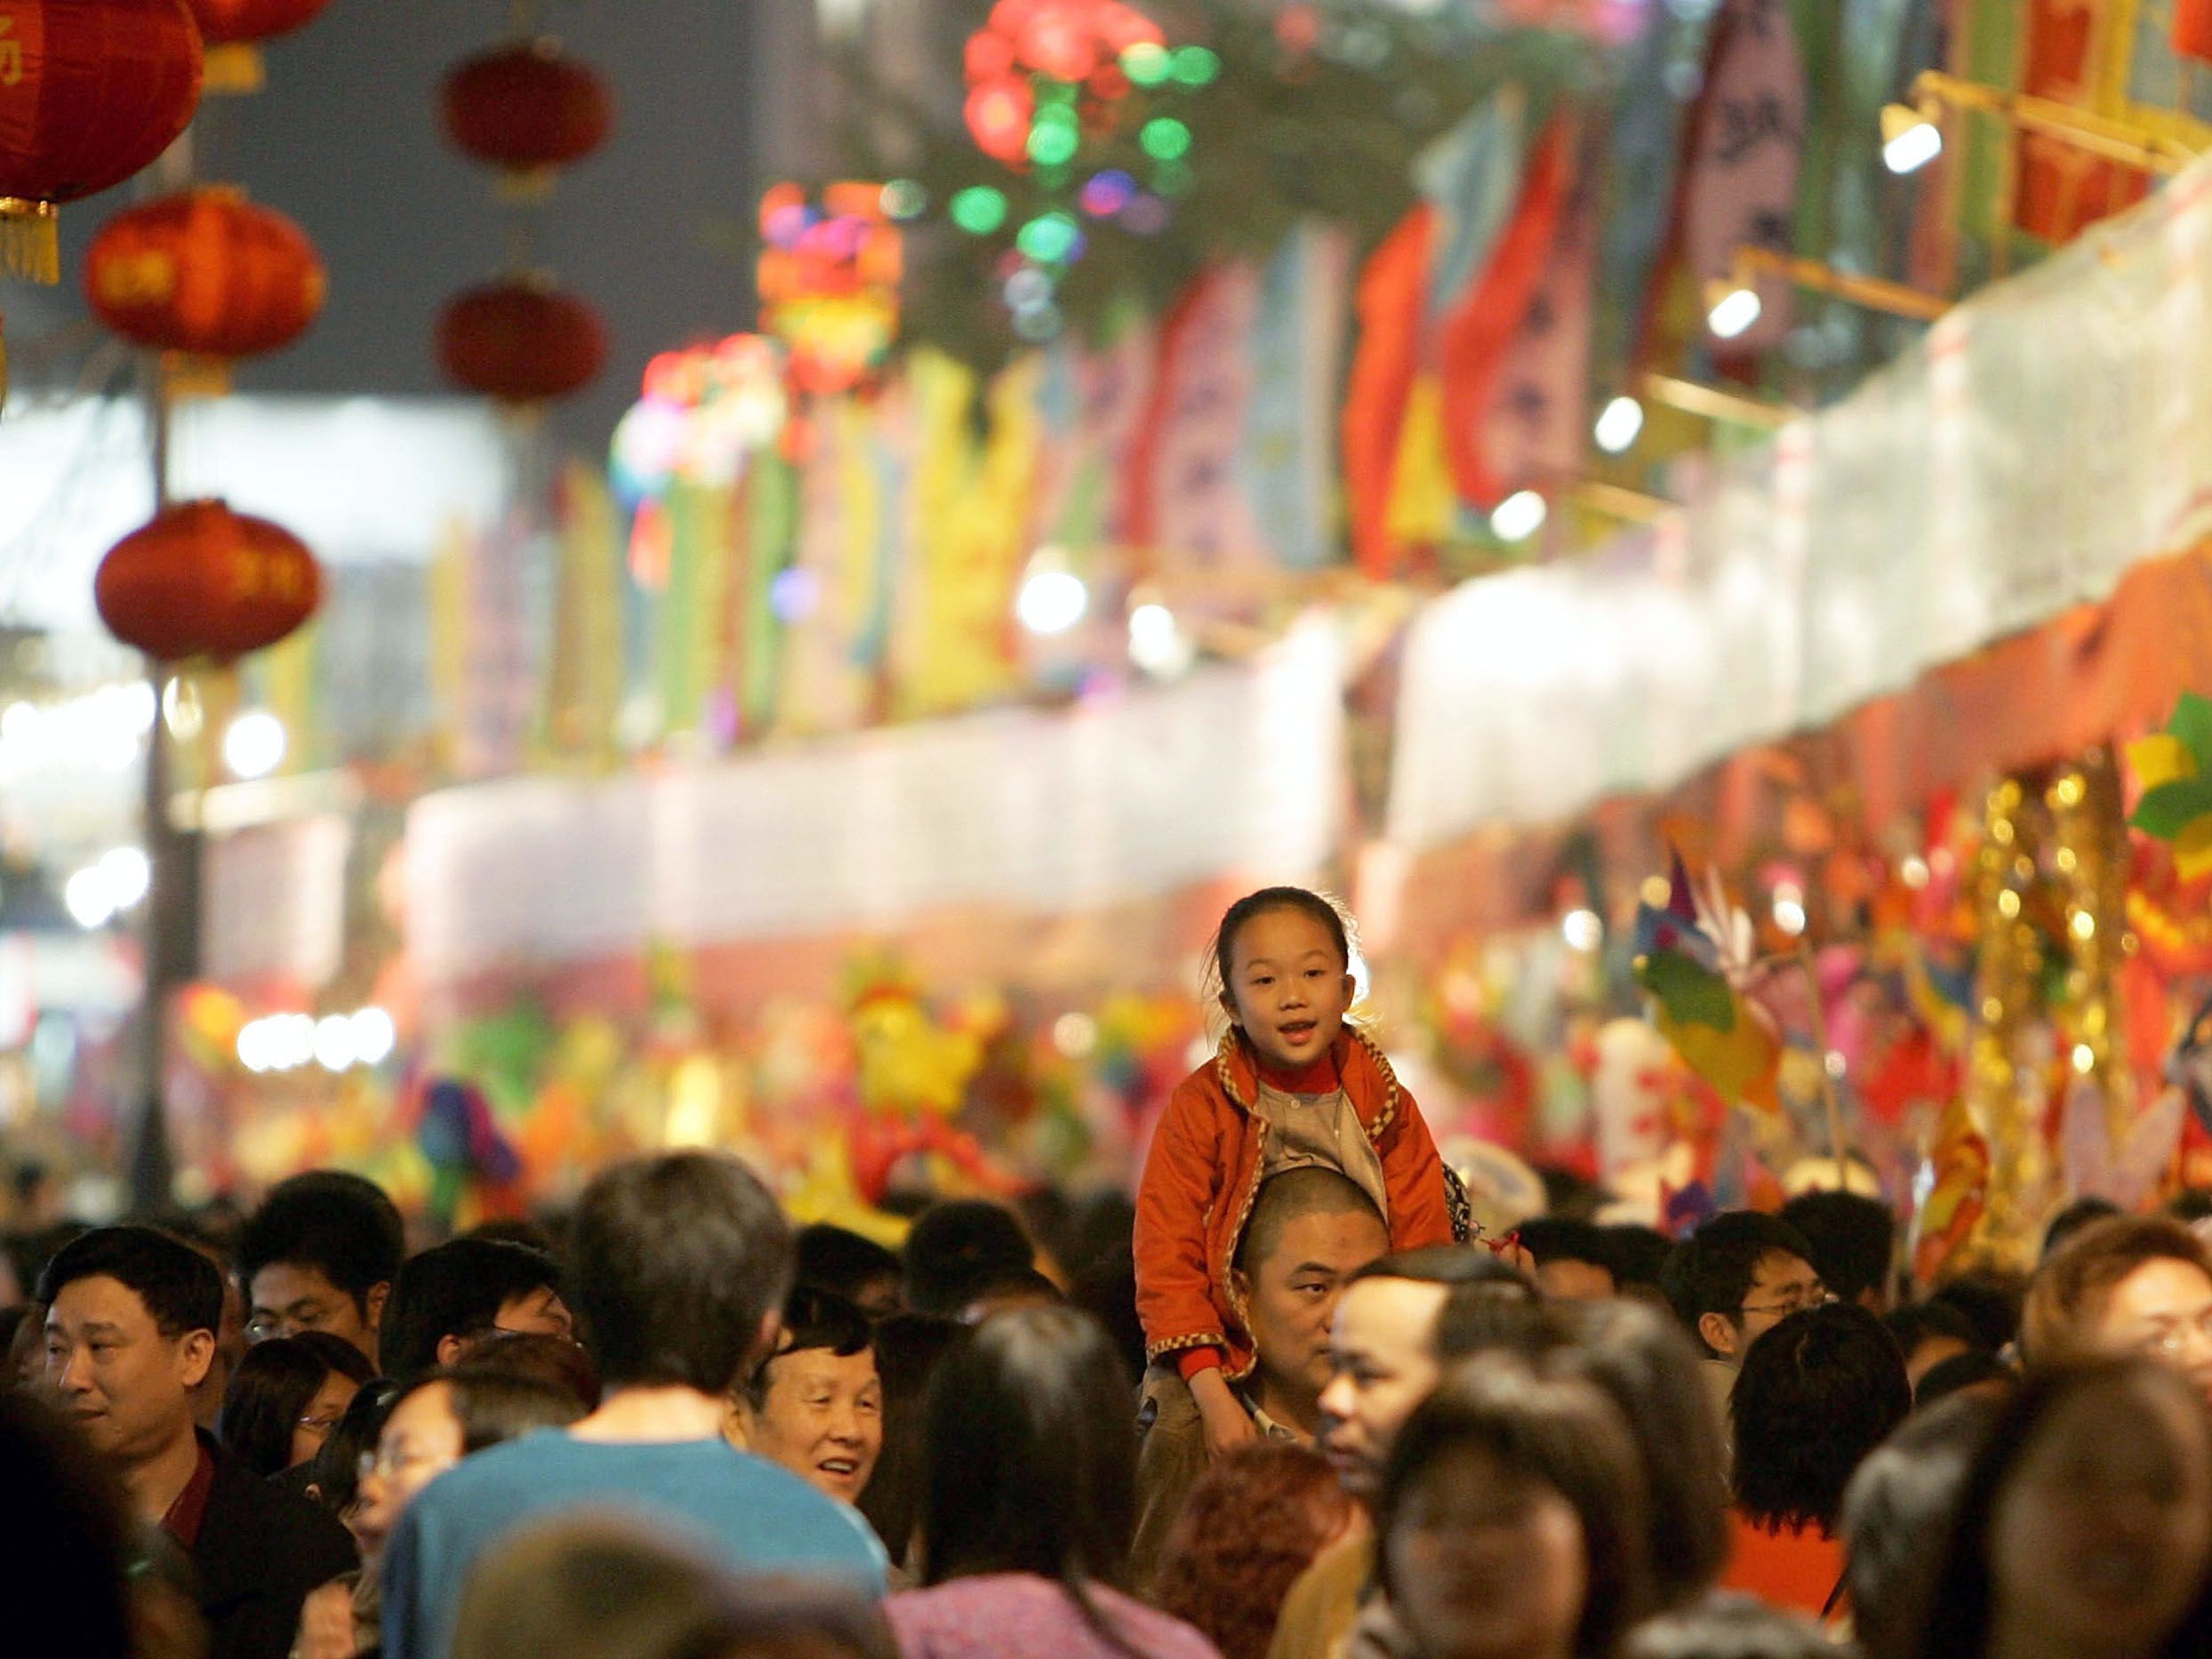 137 میلیون سفر، ارمغان 3 روز اول تعطیلات جشنواره بهاره در چین